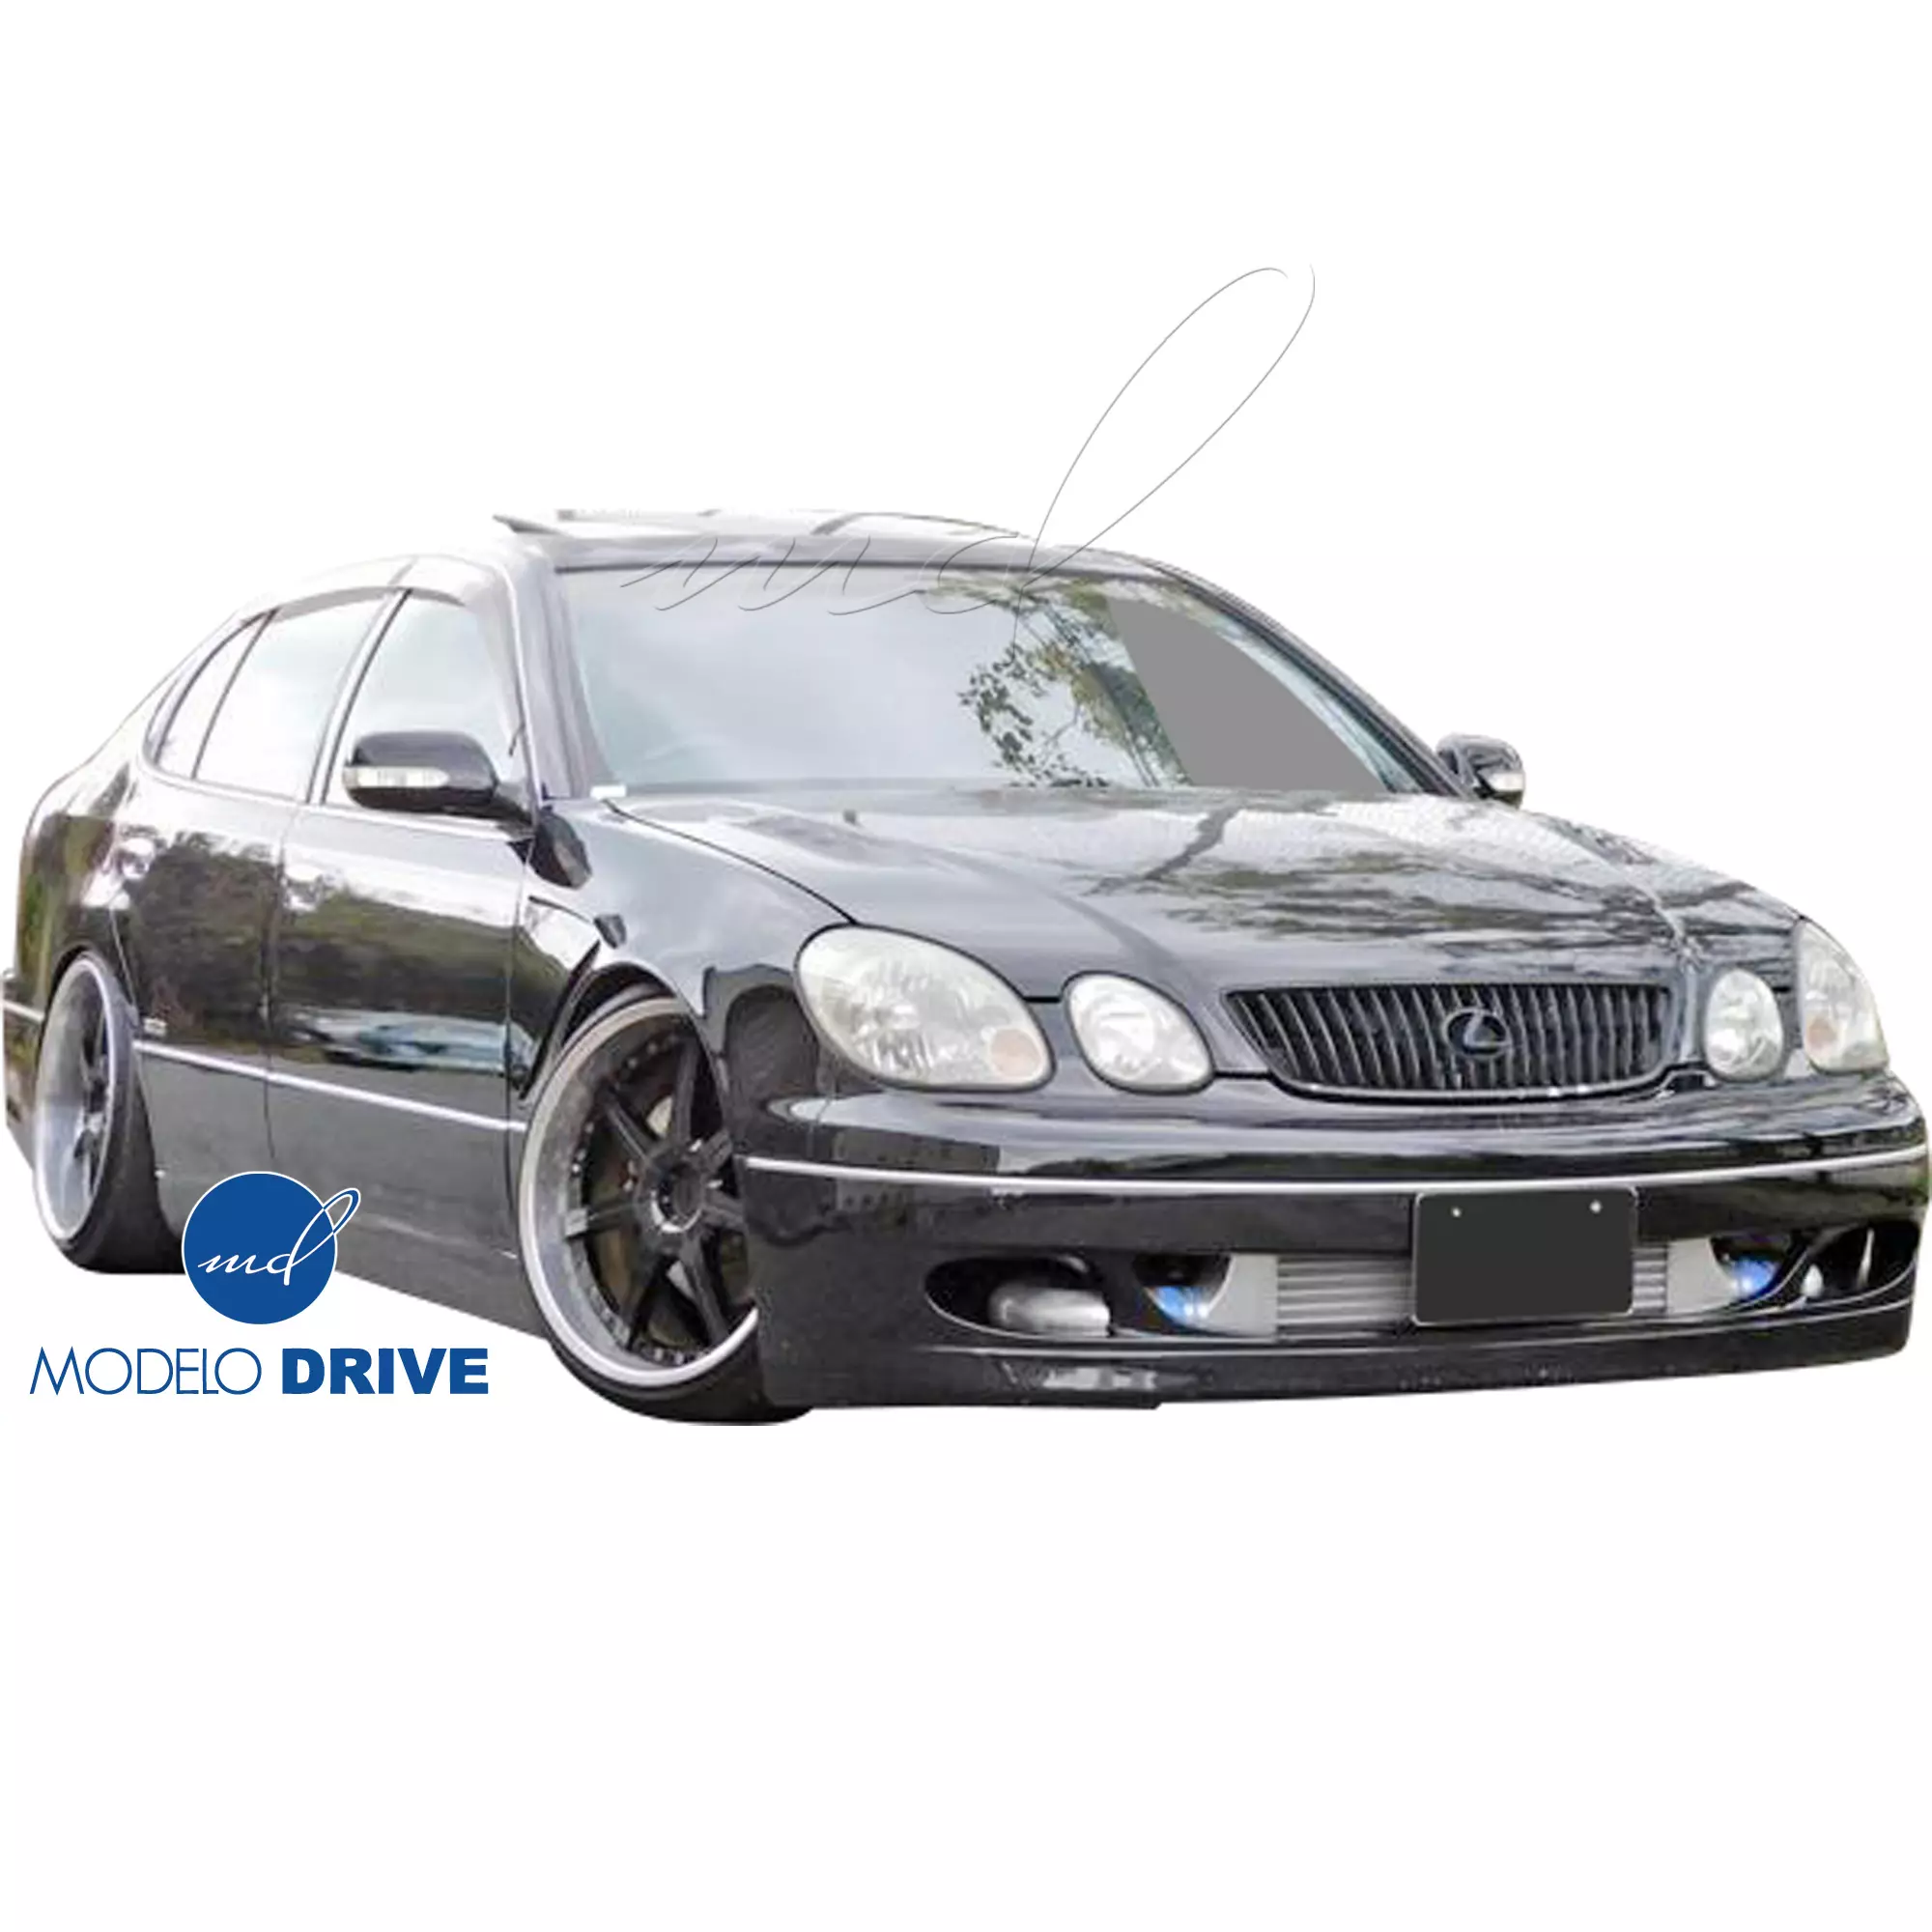 ModeloDrive FRP JUNT Front Bumper > Lexus GS Series GS400 GS300 1998-2005 - Image 2